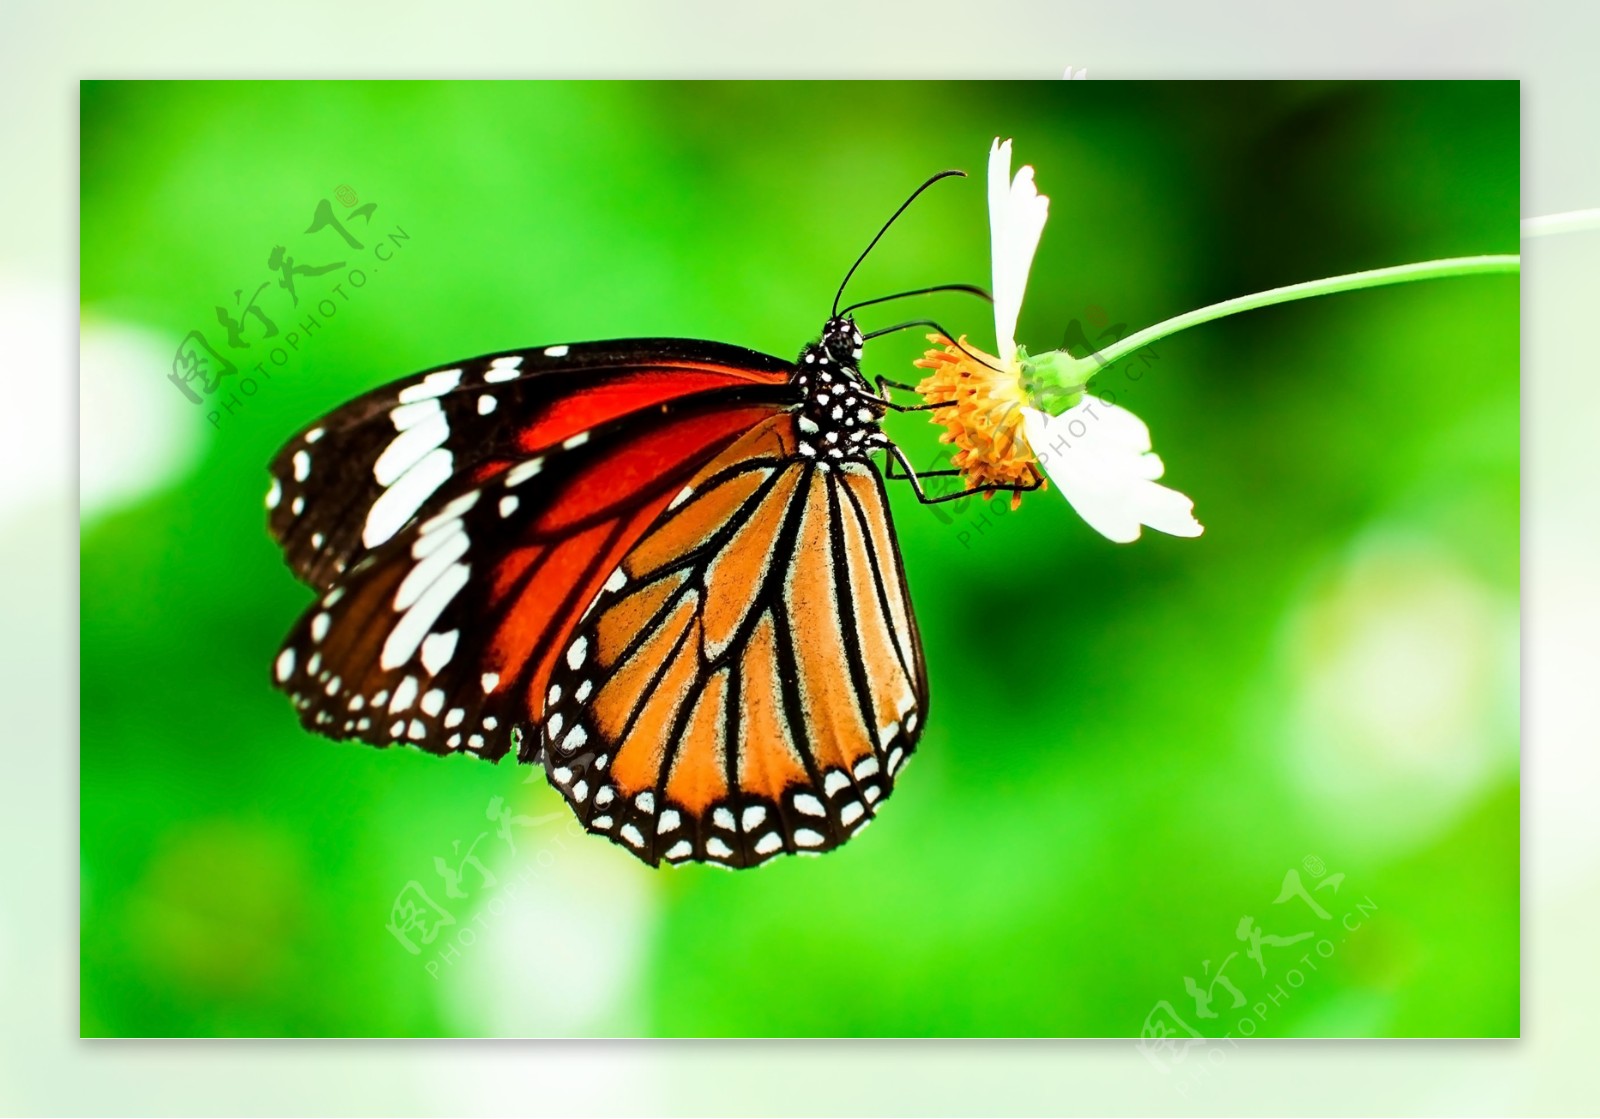 彩色蝴蝶采花蜜图片